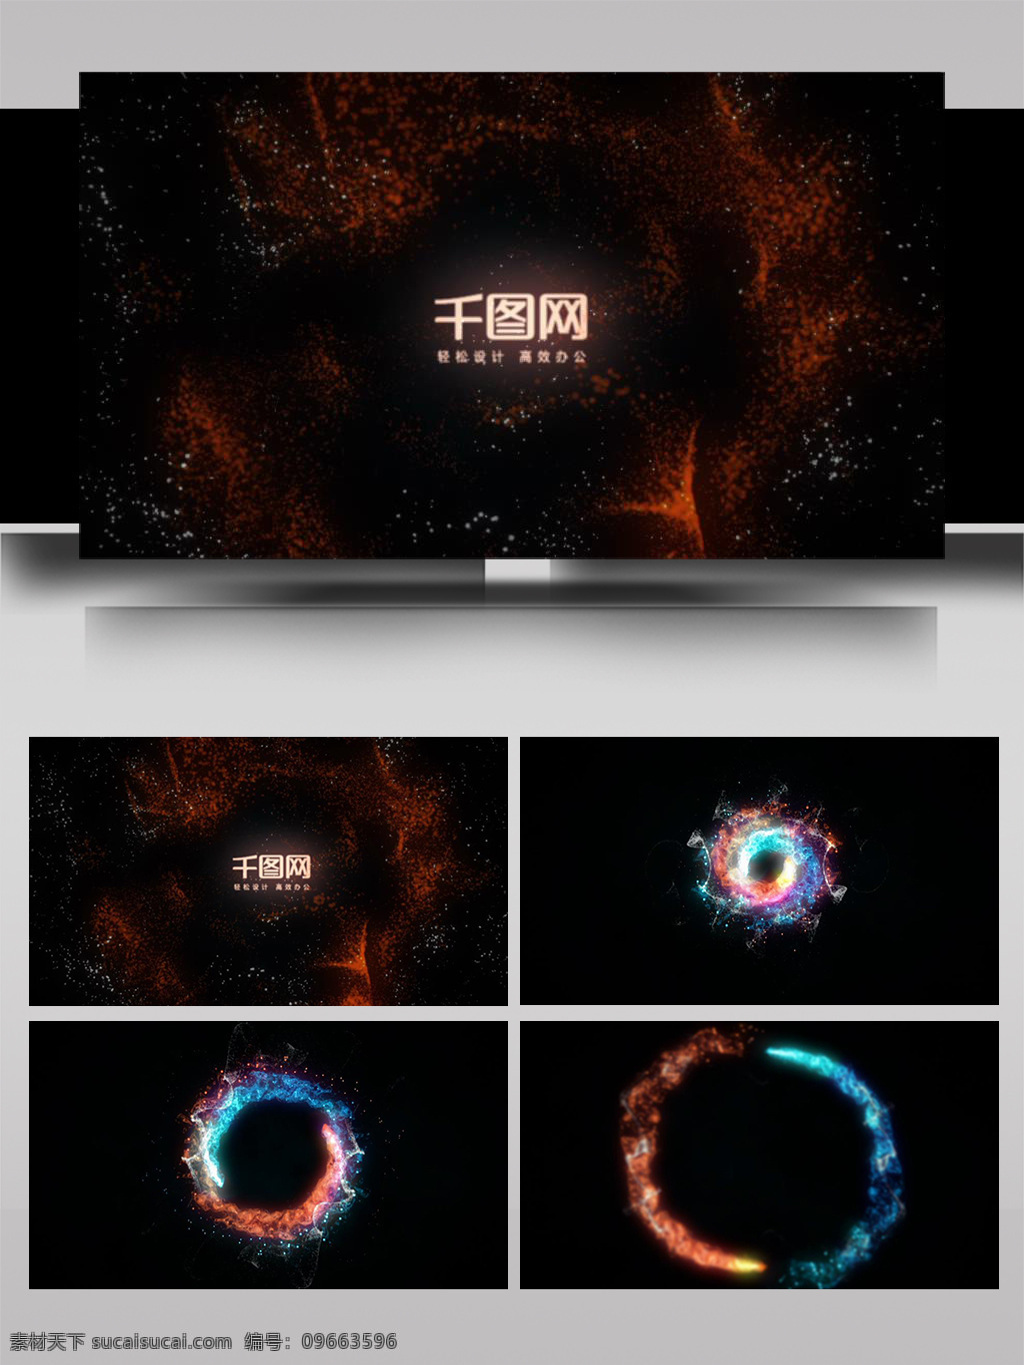 粒子 标志 生产 展示 视频 ae 模板 火焰 宇宙 大气 3d标志 震撼 金属 光影 章 动态 logo 动画 片头